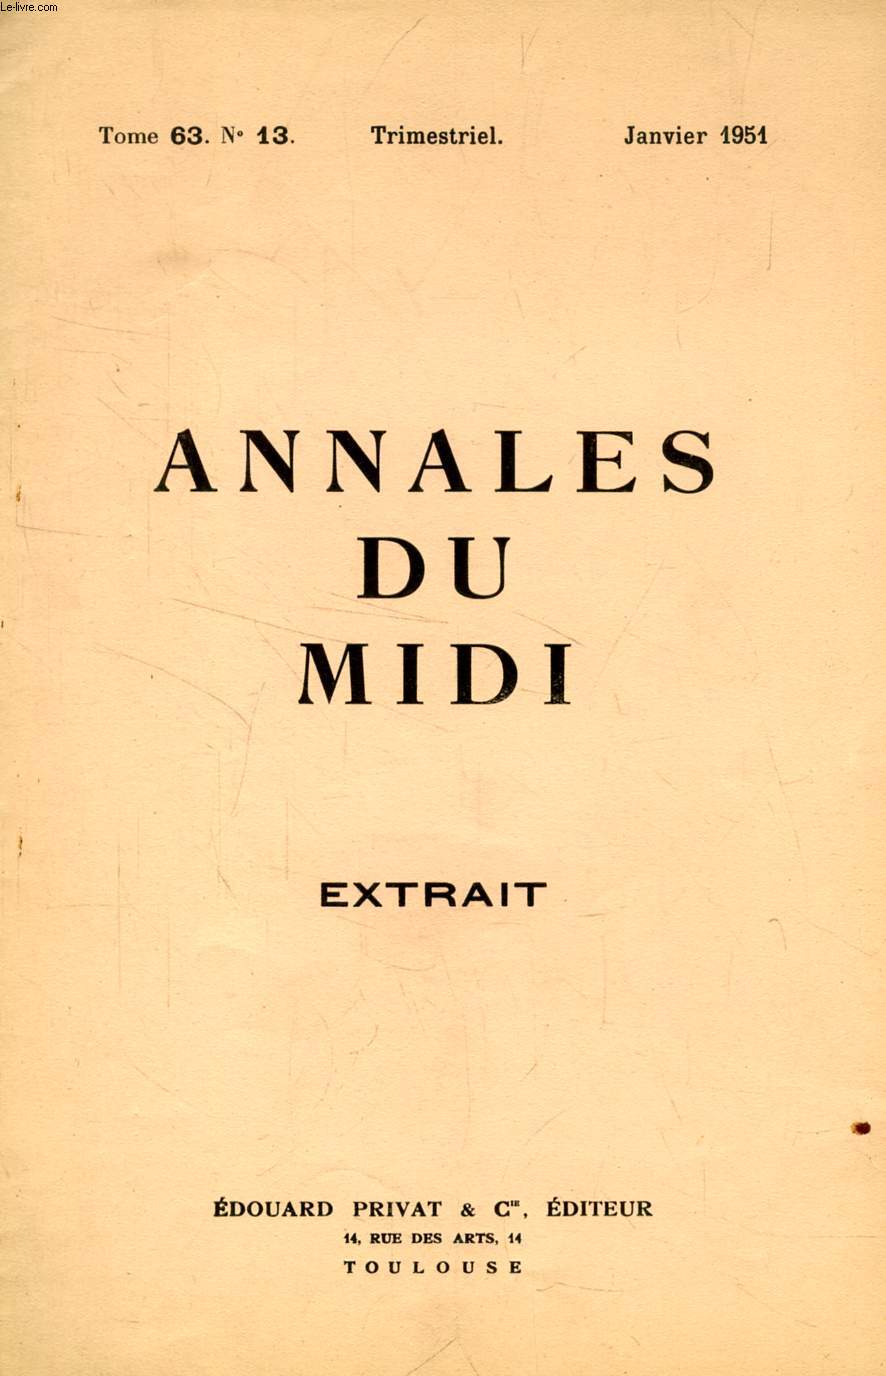 ANNALES DU MIDI, TOME 63, N 13, JAN. 1951 (EXTRAIT), L'INQUISITEUR BERNARD DE CAUX ET L'AGENAIS